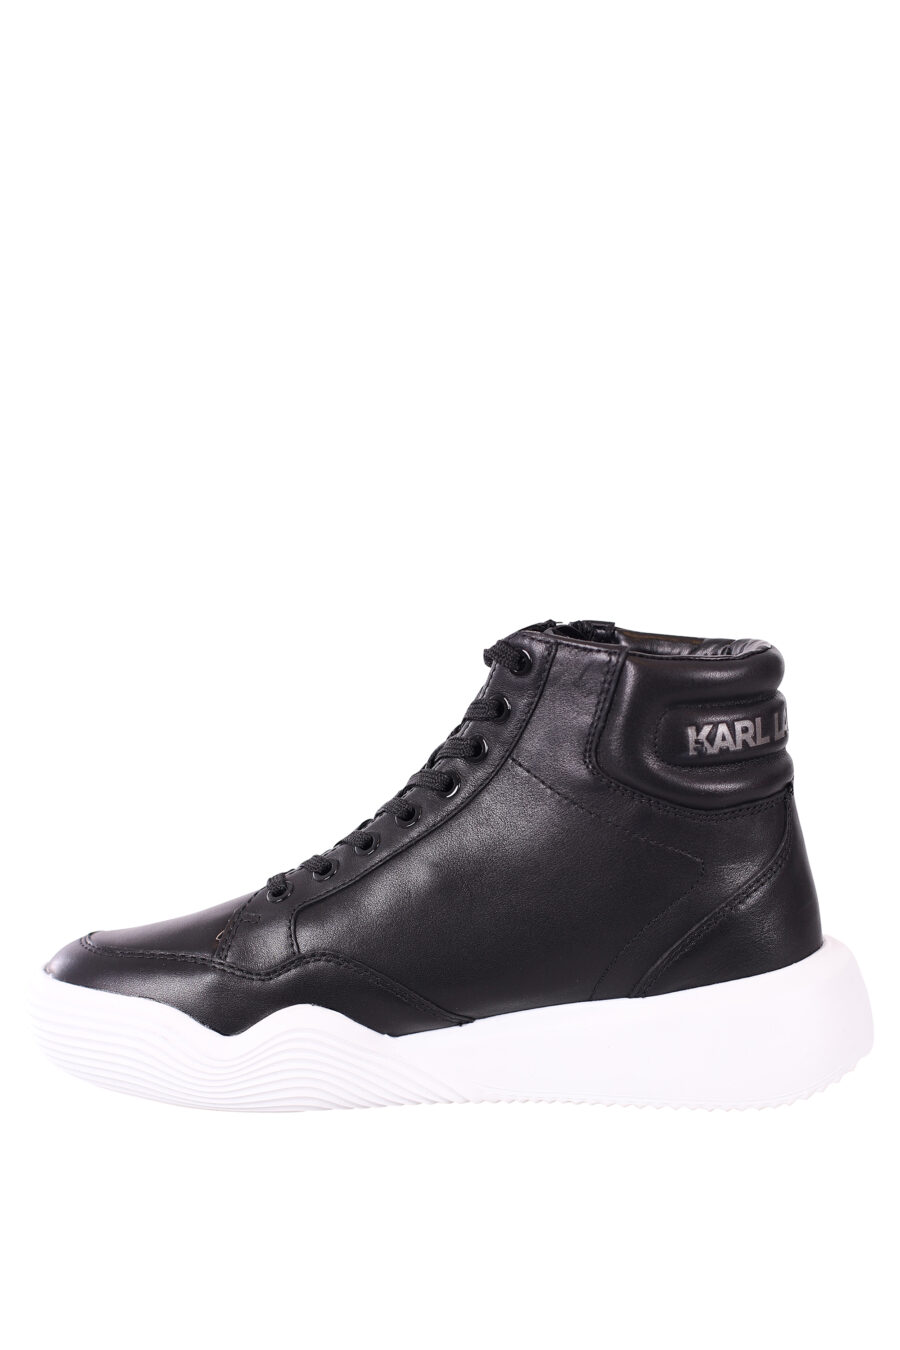 Zapatillas altas negras con suela blanca y cordones - IMG 5725